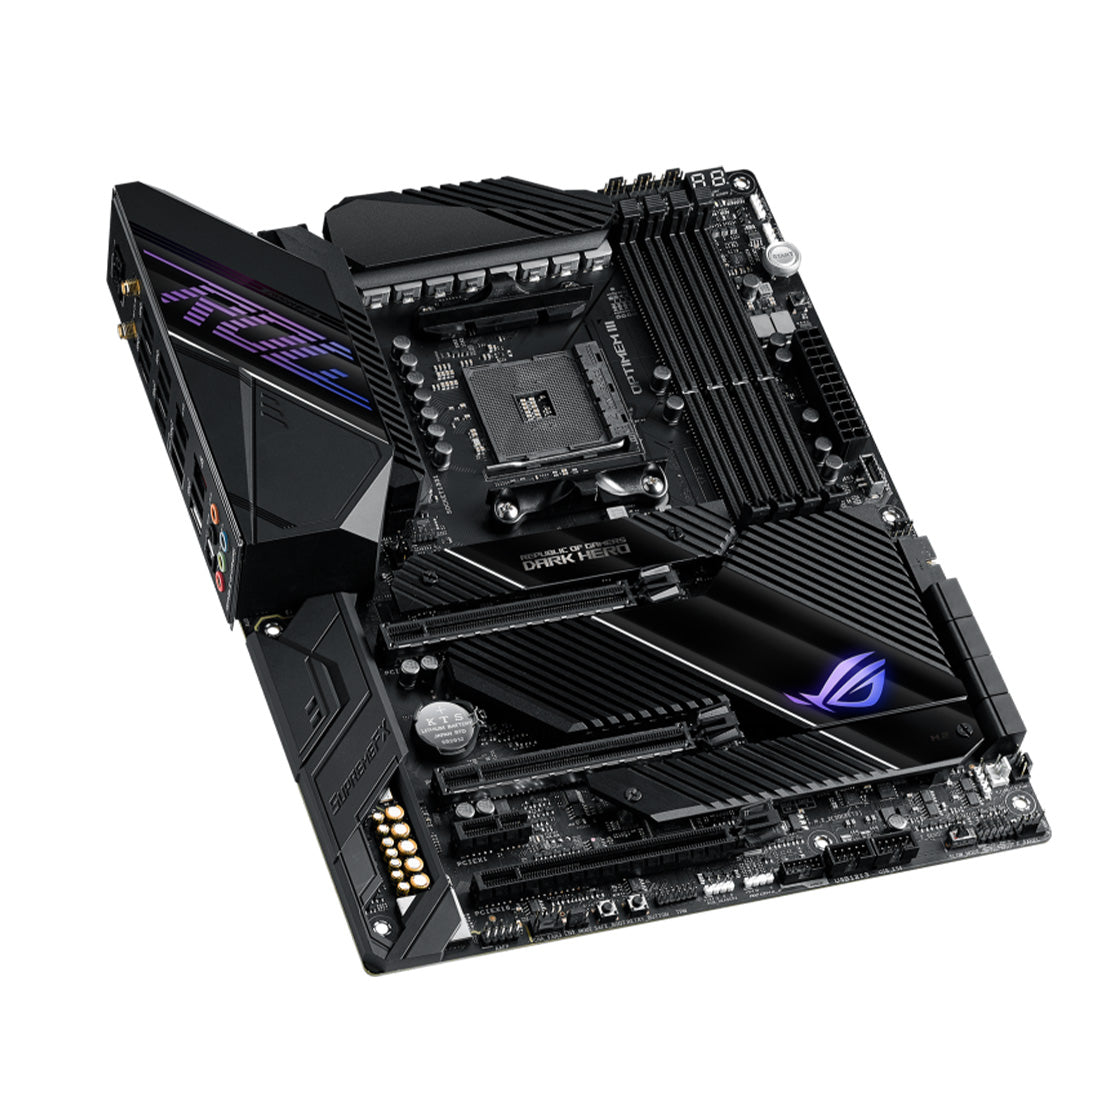 ASUS ROG CROSSHAIR VIII Dark Hero ATX AMD AM4 गेमिंग WIFI मदरबोर्ड PCIe 4.0 और डुअल M.2 के साथ